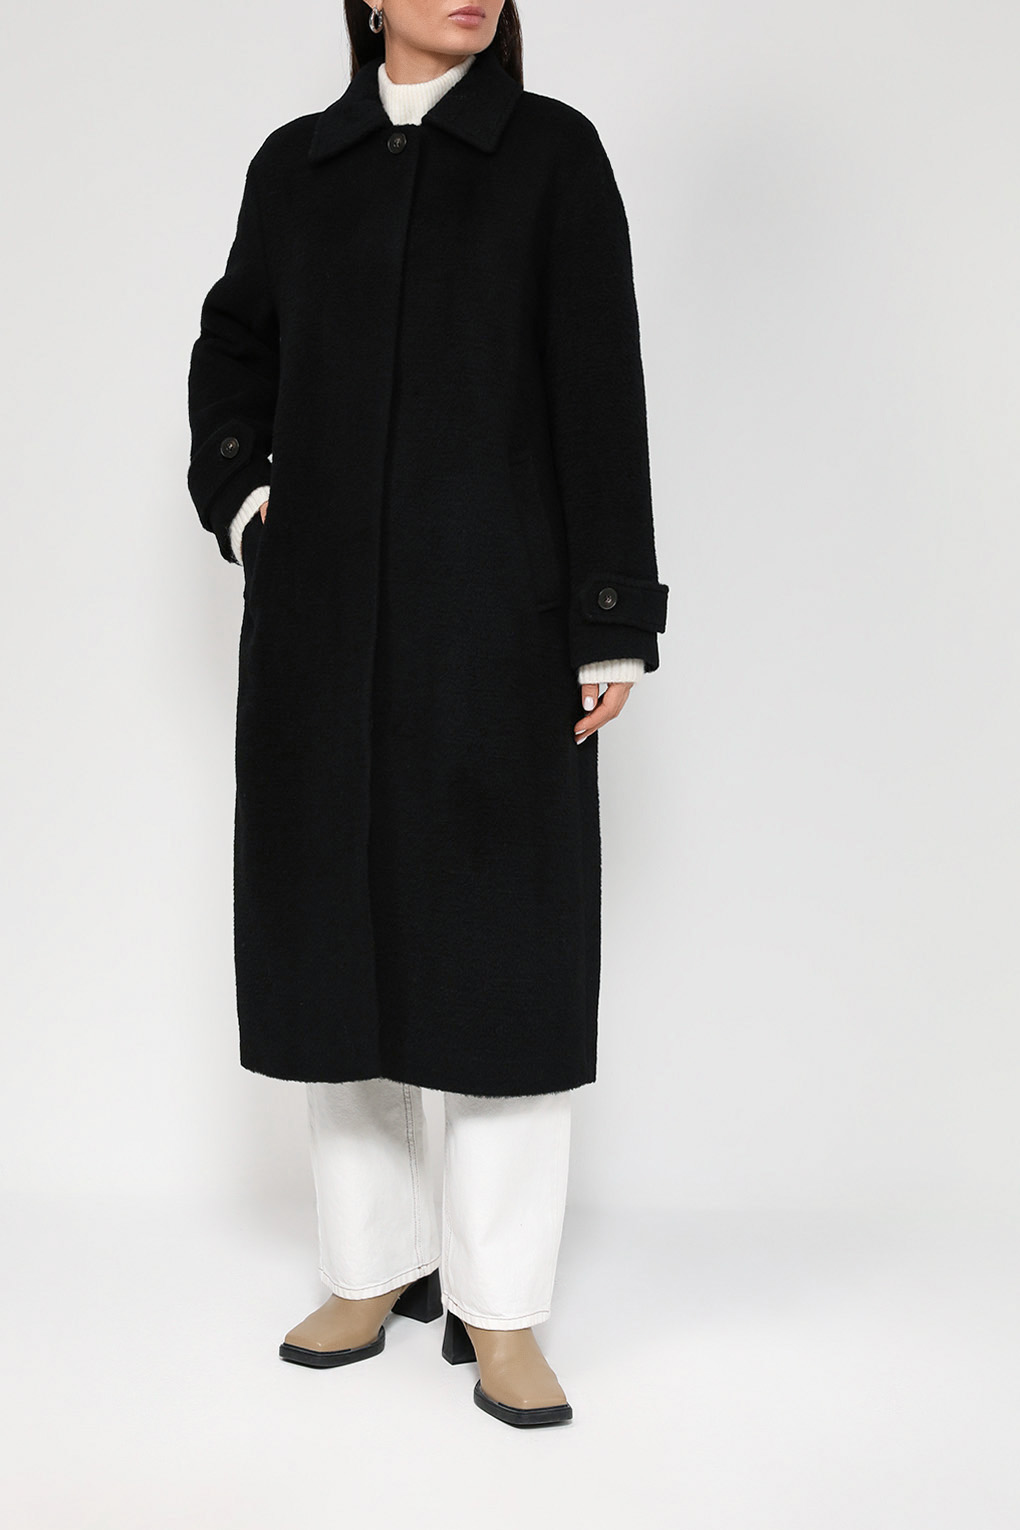 Пальто женское SABRINA SCALA SS22076181-001 черное 46 RU